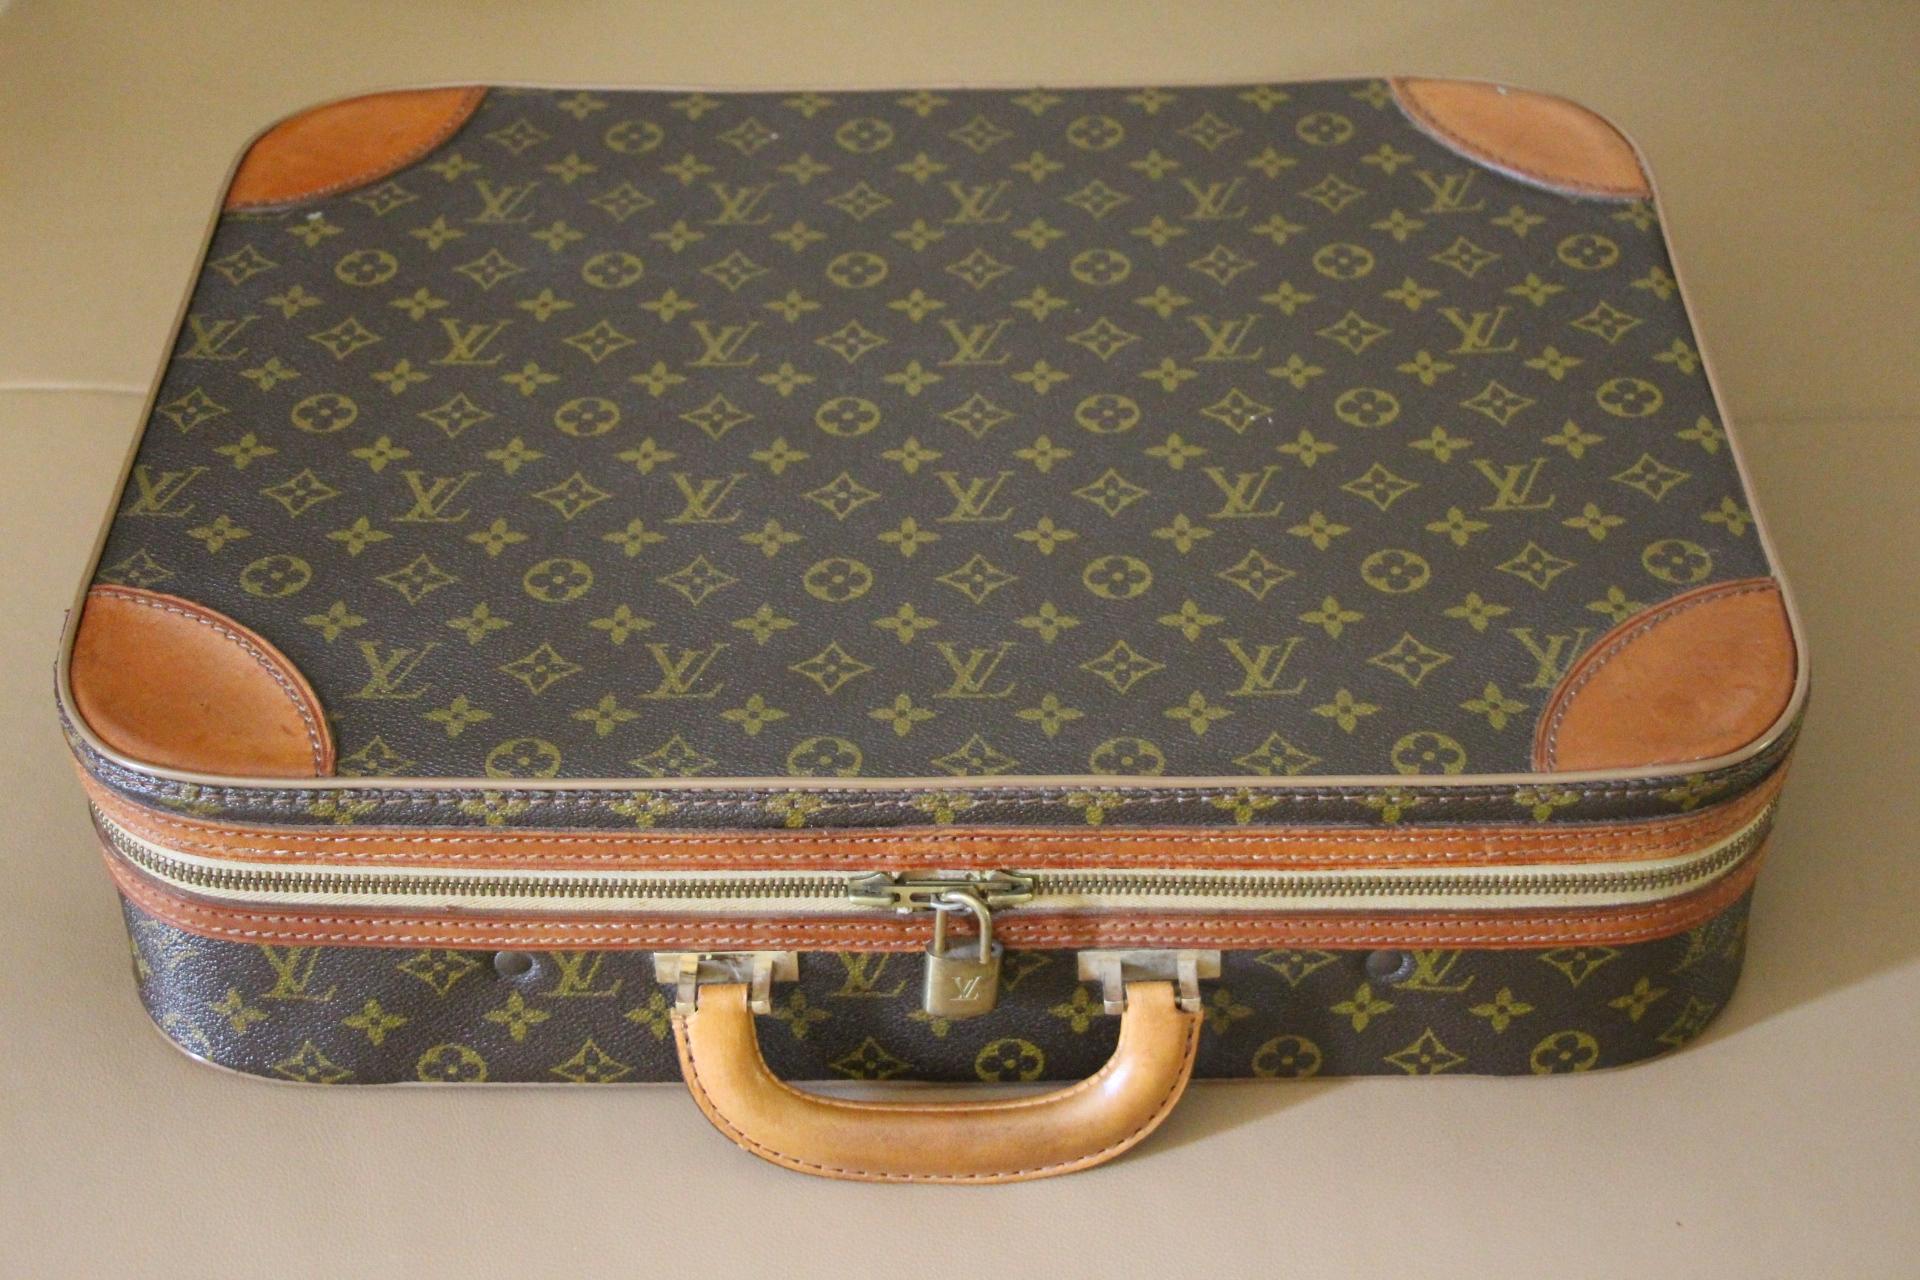 Dies ist ein prächtiger halbstarrer Louis Vuitton Monogramm-Koffer. Sein ganzer Rahmen ist starr, während seine 2 Hauptseiten aus weichem Segeltuch bestehen und sich dank seiner 2 Reißverschlüsse sehr leicht und mühelos schließen lassen.
Es hat